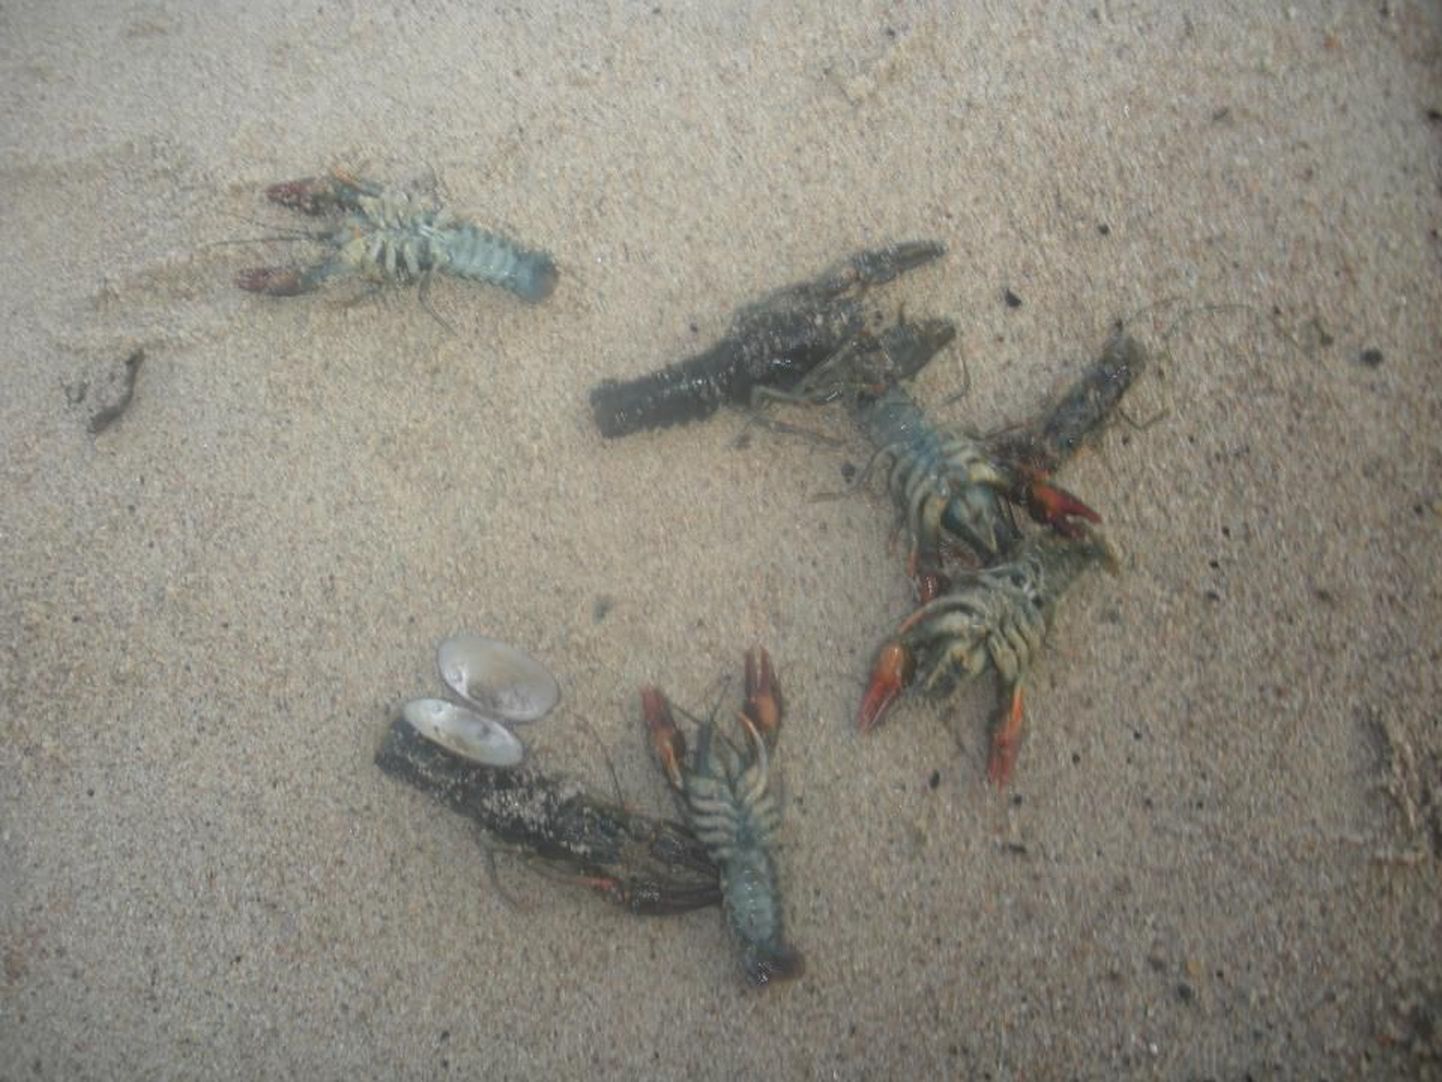 Surnud vähid Karepa rannas laupäeva hommikul.